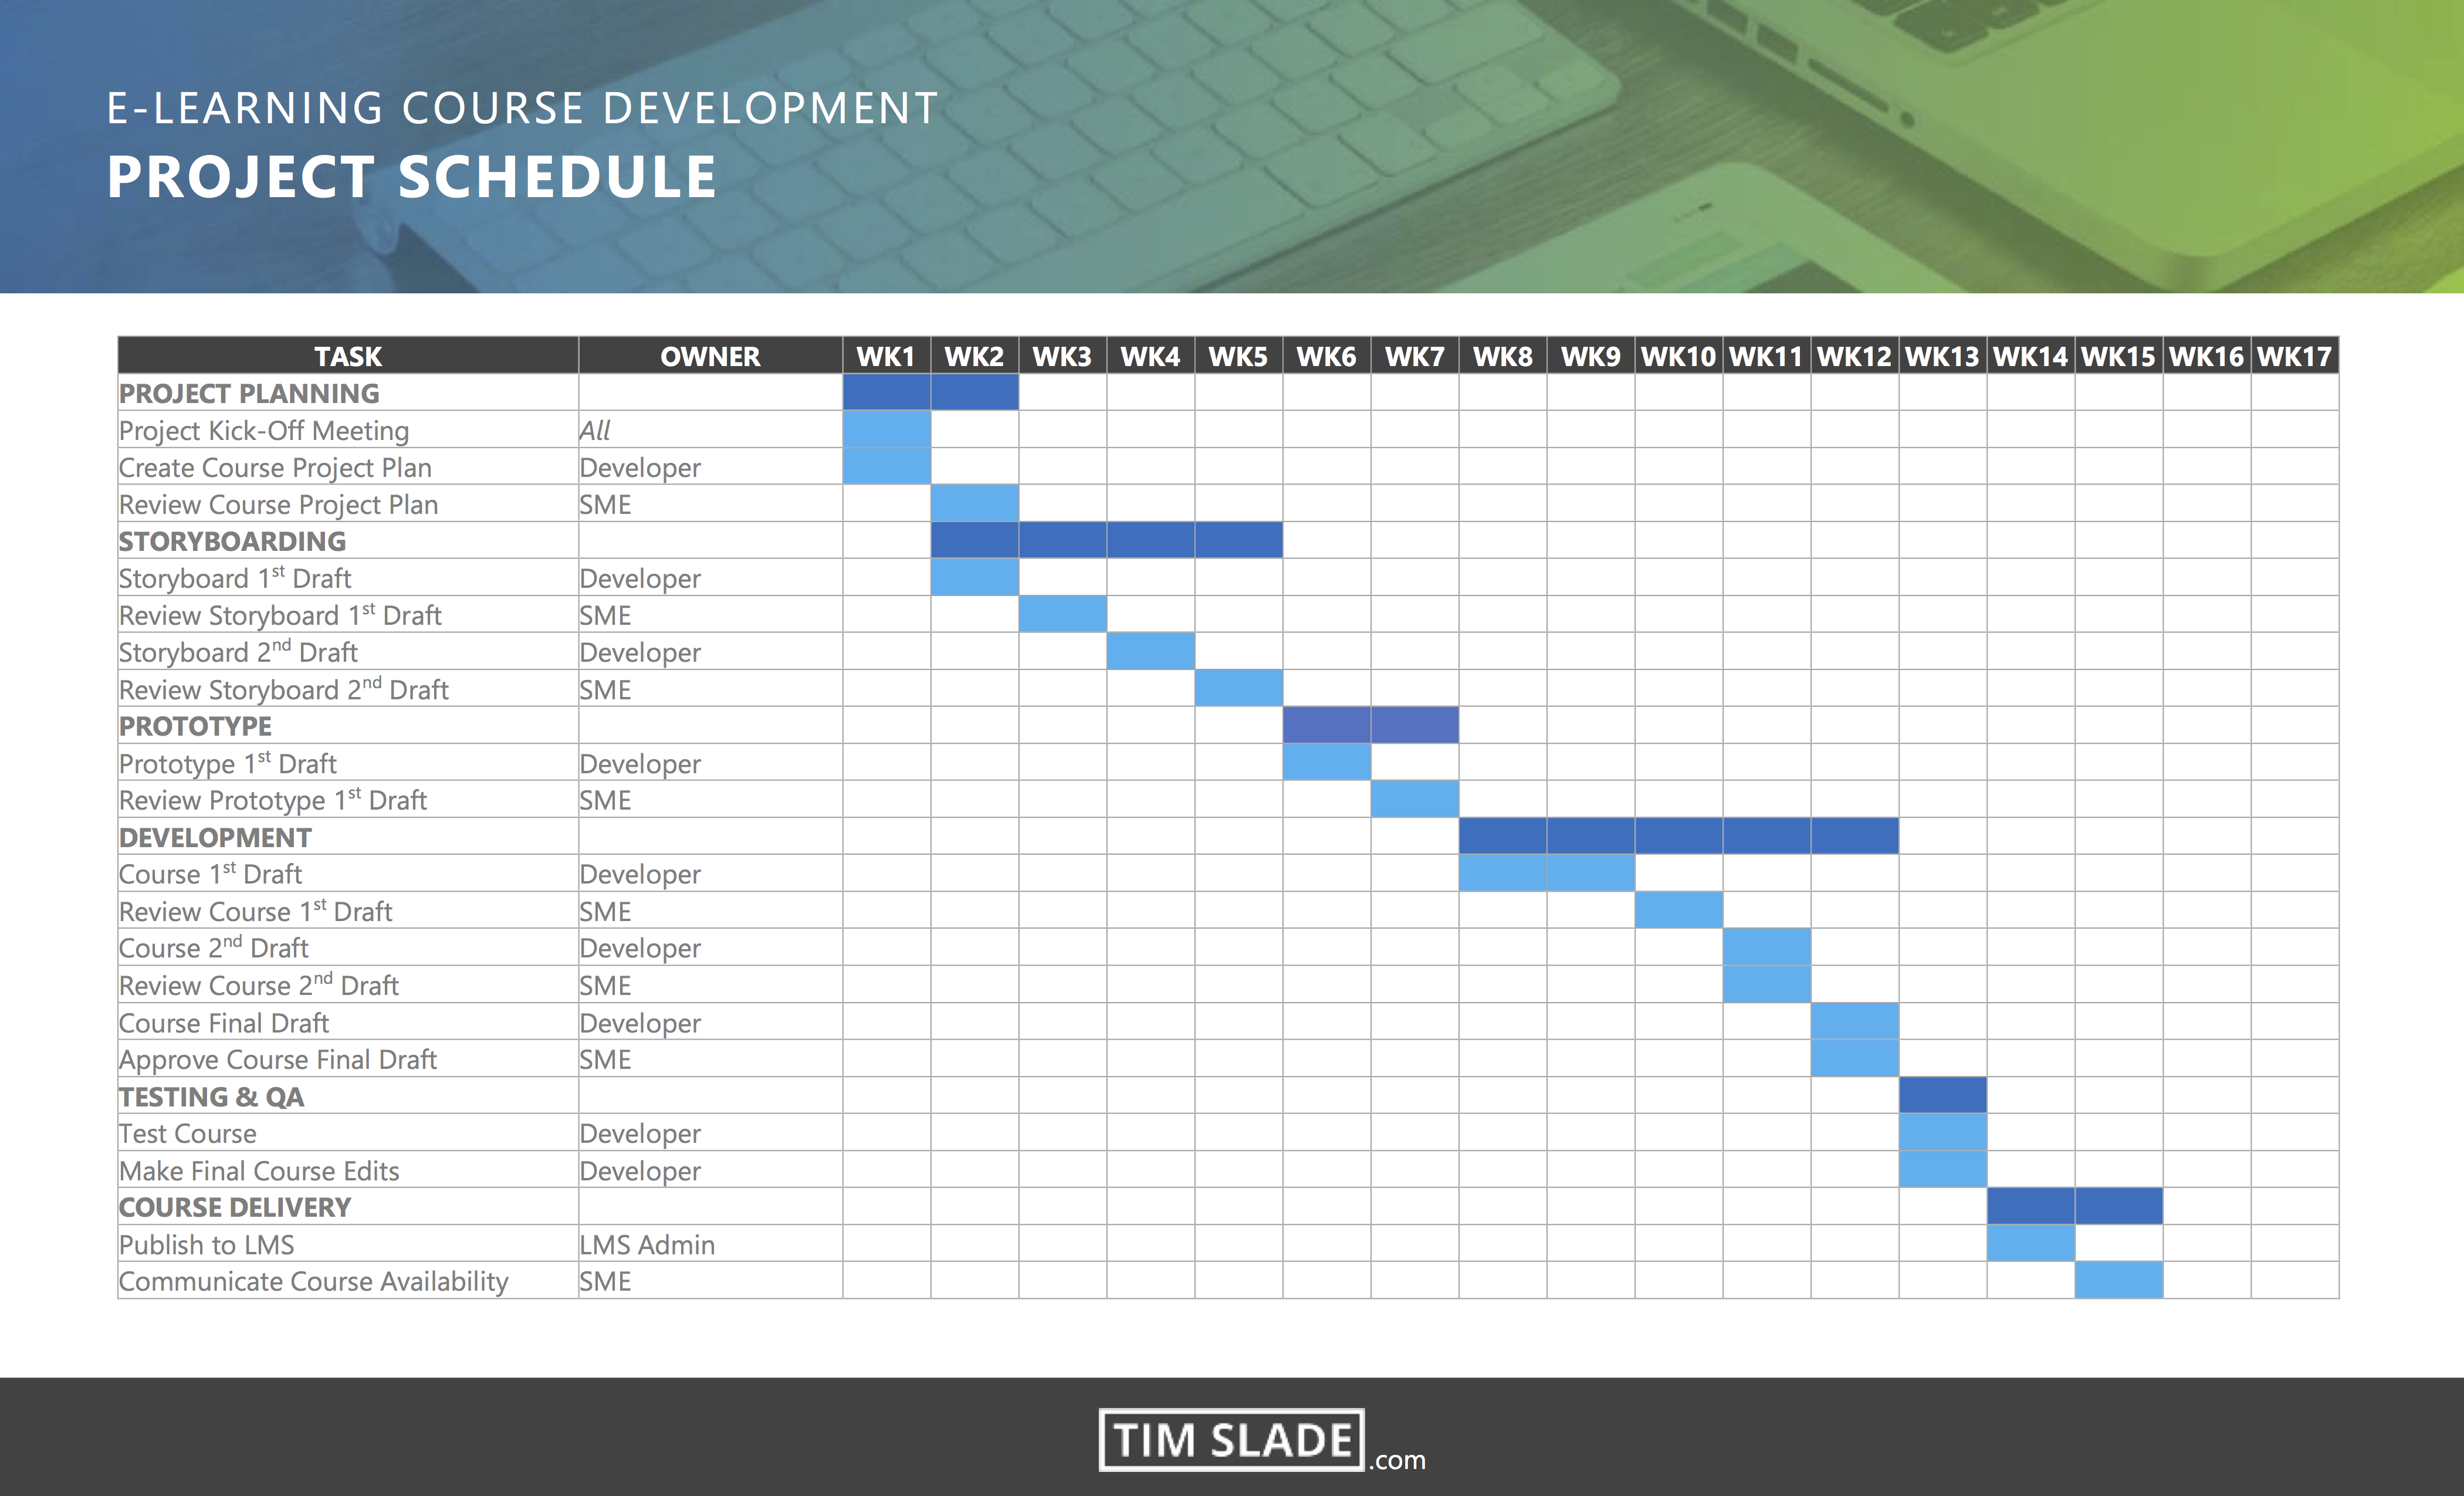 Plan schedule